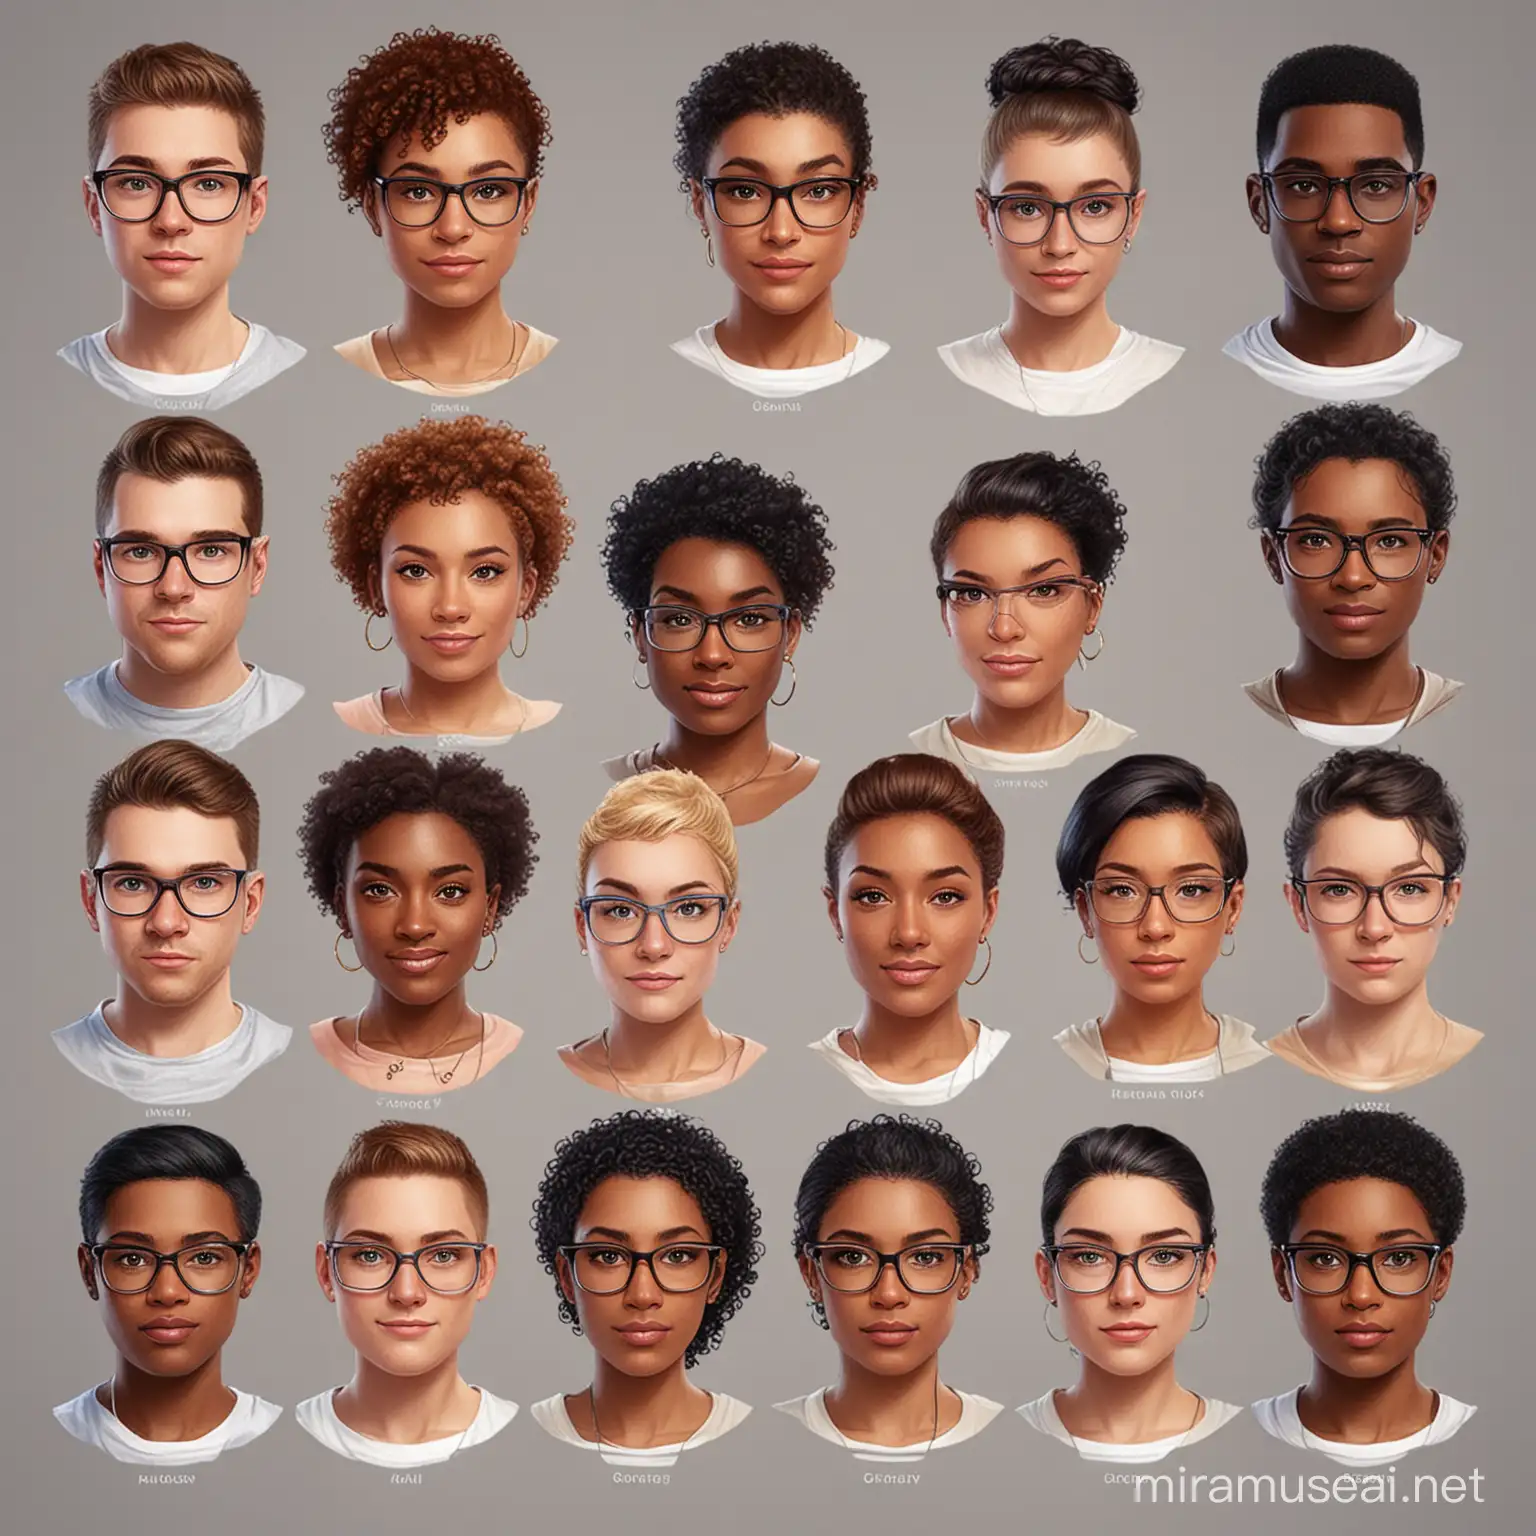 Crie 04 avatares que serão a imagem de consultores virtuais de um produto digital. Contemple diversidade de orientação sexual e raça